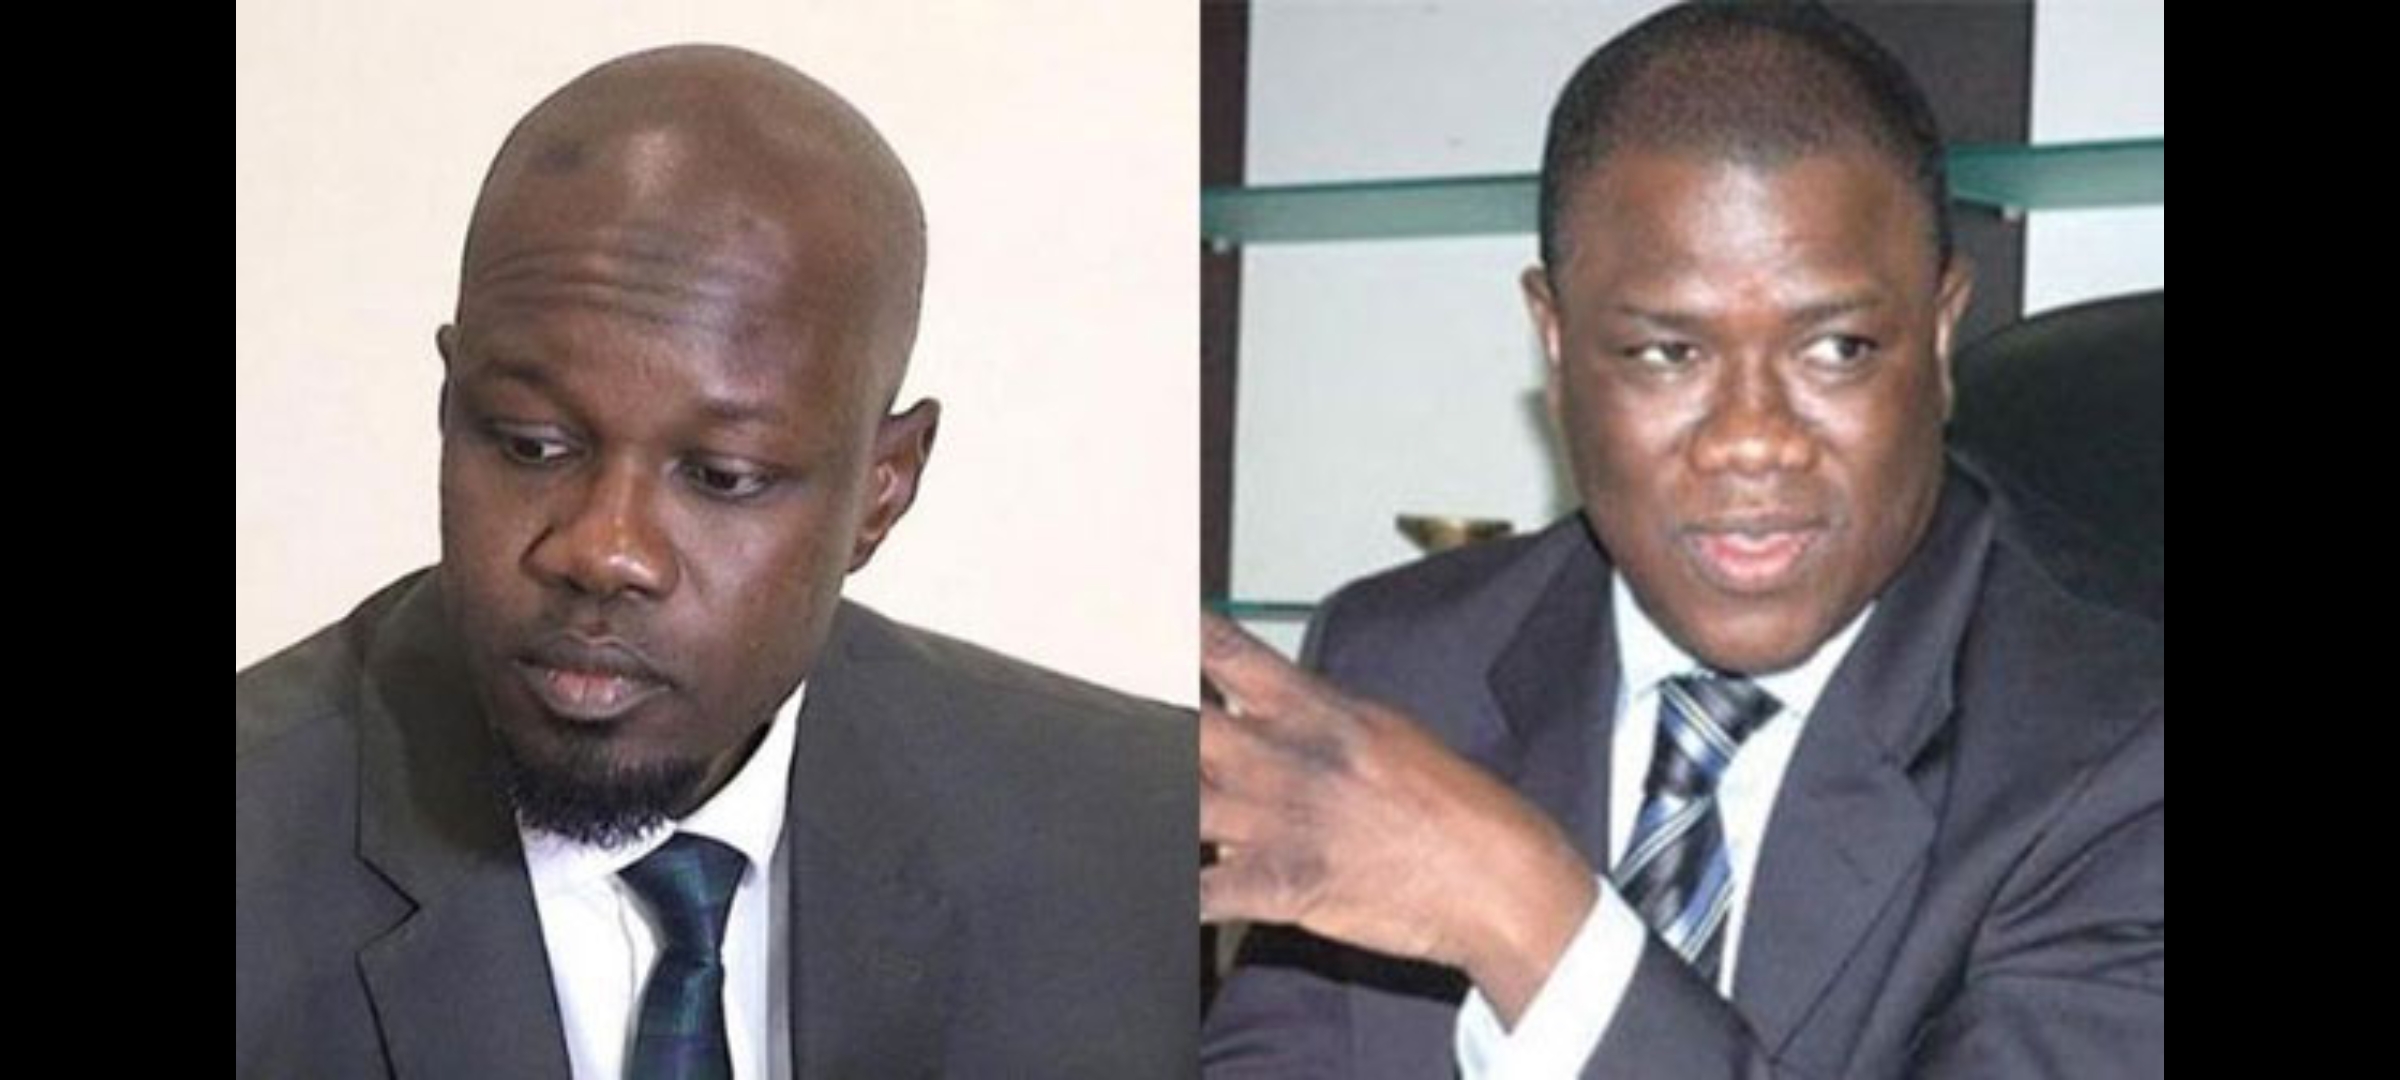 Ziguinchor : Les jeunes de Baldé répondent au maire Ousmane Sonko et le défient sur le terrain politique